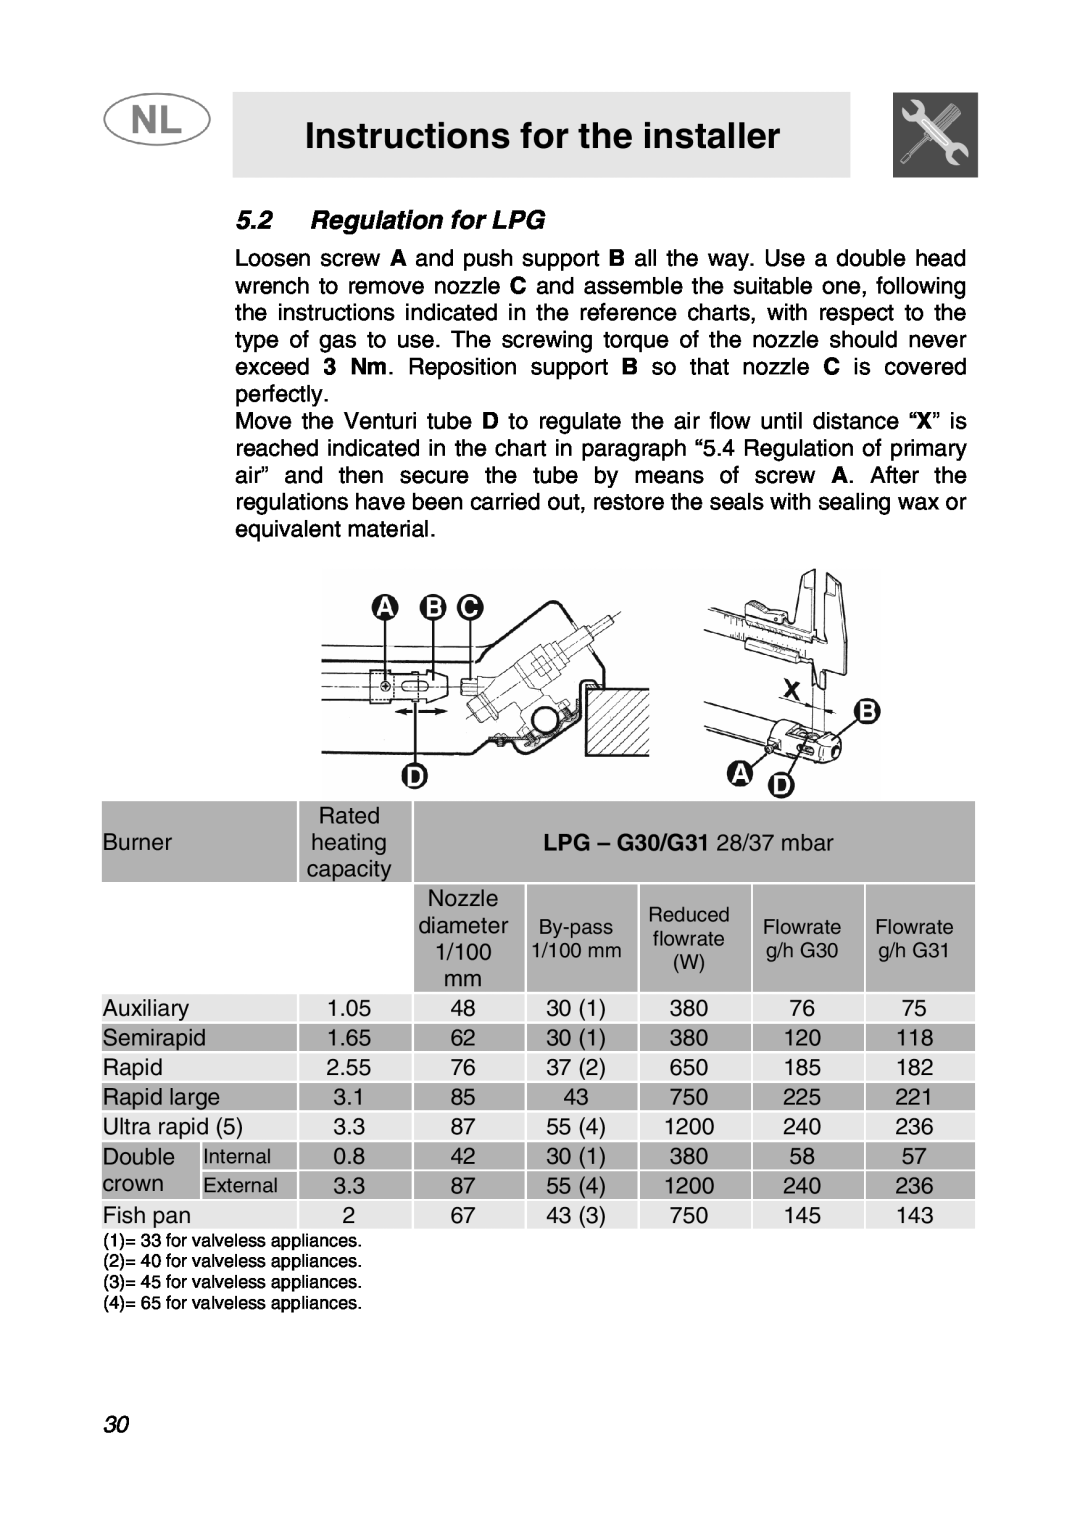 Smeg SNL574GH manual Regulation for LPG, Instructions for the installer, LPG - G30/G31 28/37 mbar 